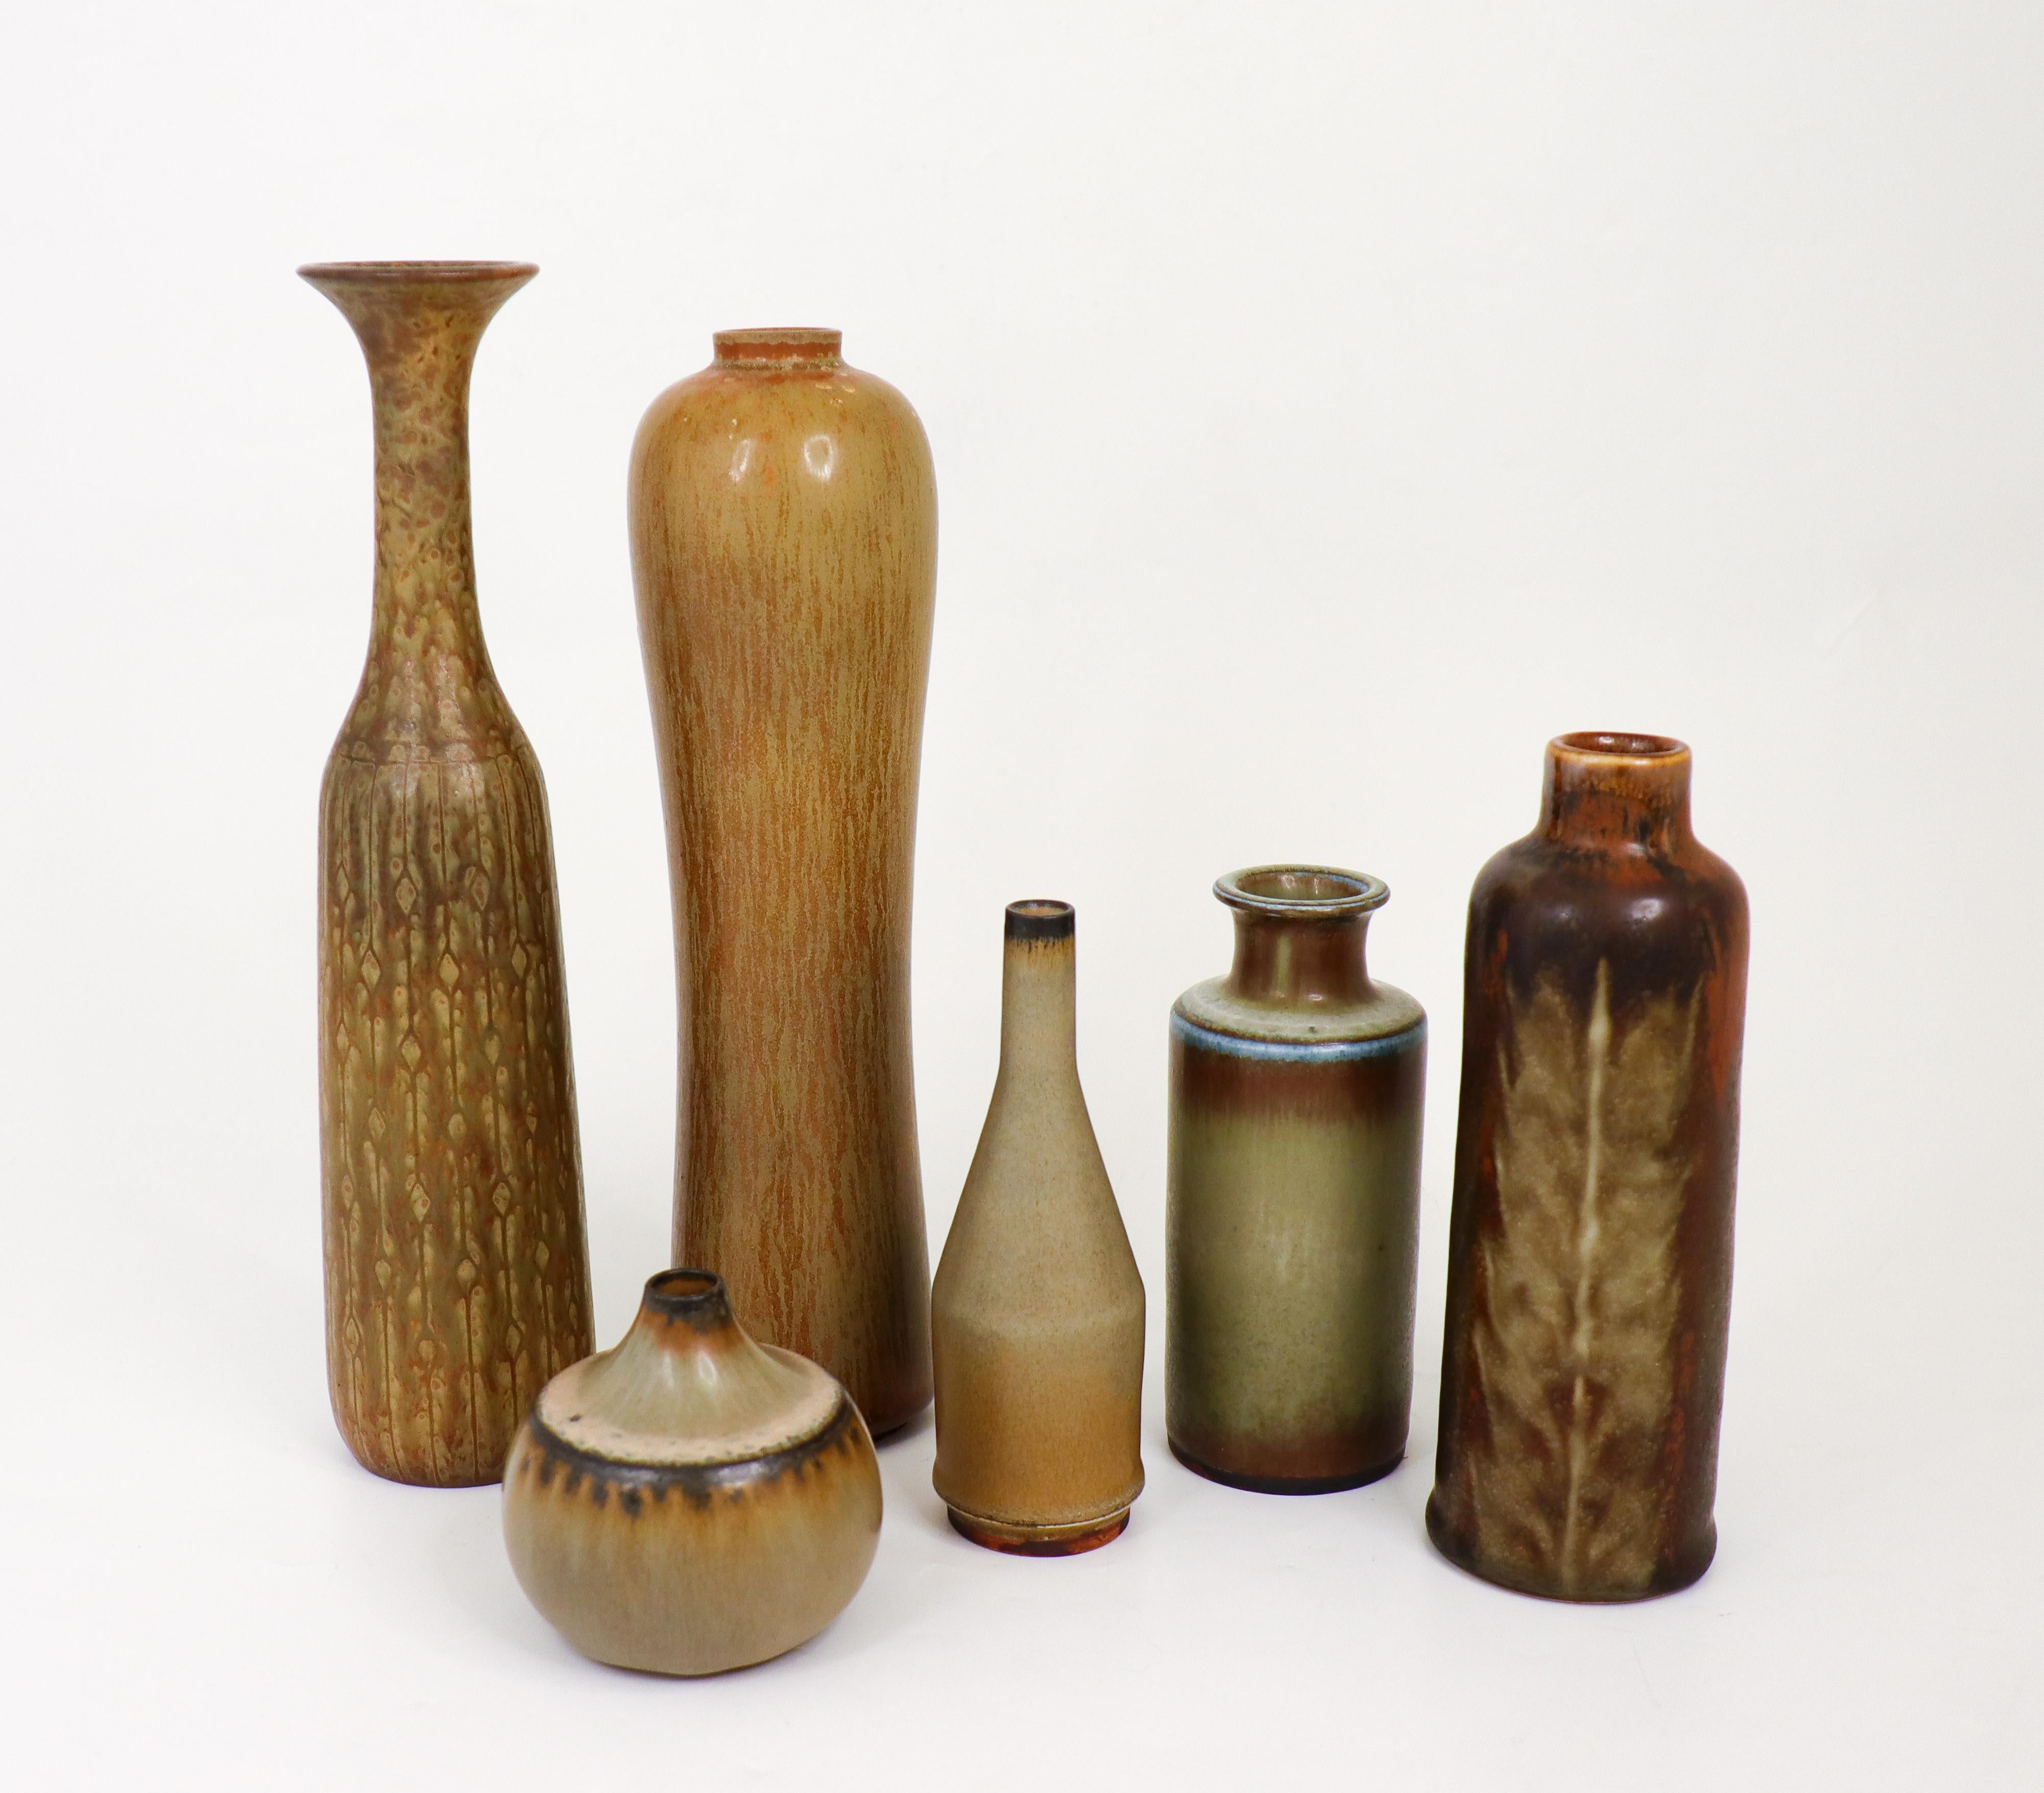 Un groupe de deux vases conçus par Gunnar Nylund et quatre vases de Carl-Harry Stålhane chez Rörstrand dans les années 1950 et 1960.  Les vases ont une hauteur comprise entre 6,5 et 25,5 cm et sont en excellent état. Deux des vases sont de 2ème